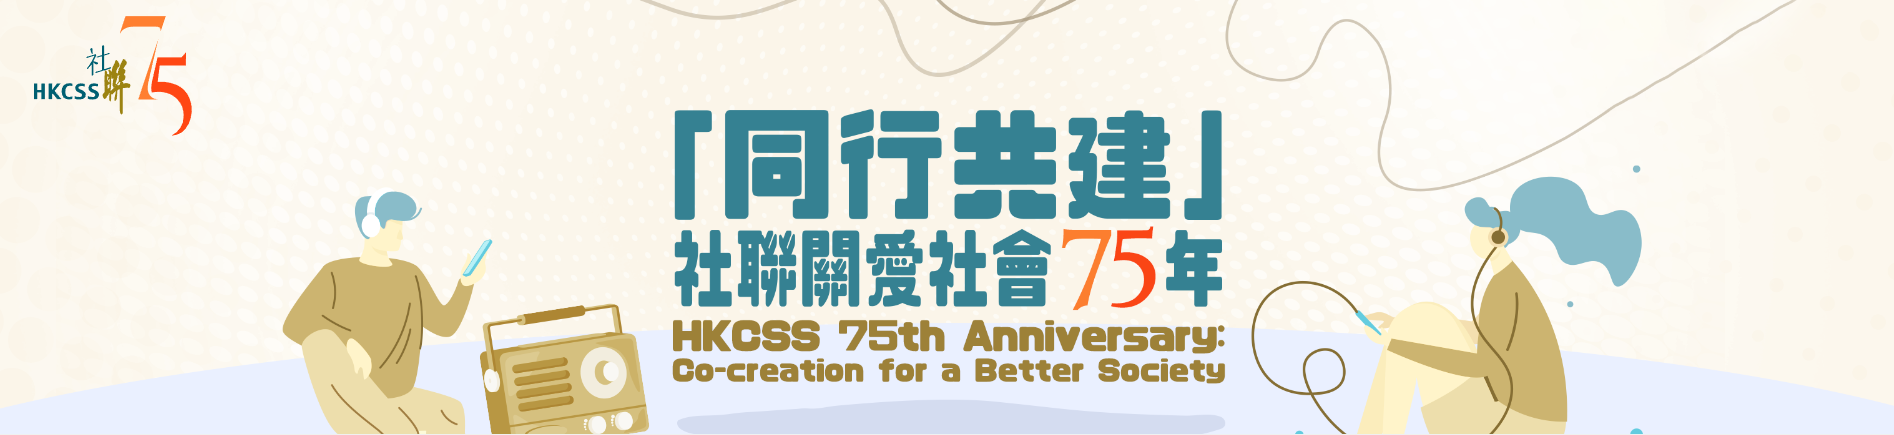 「同行共建」社聯關愛社會75年 HKCSS 75th Anniversary: Co-creation for a Better Society